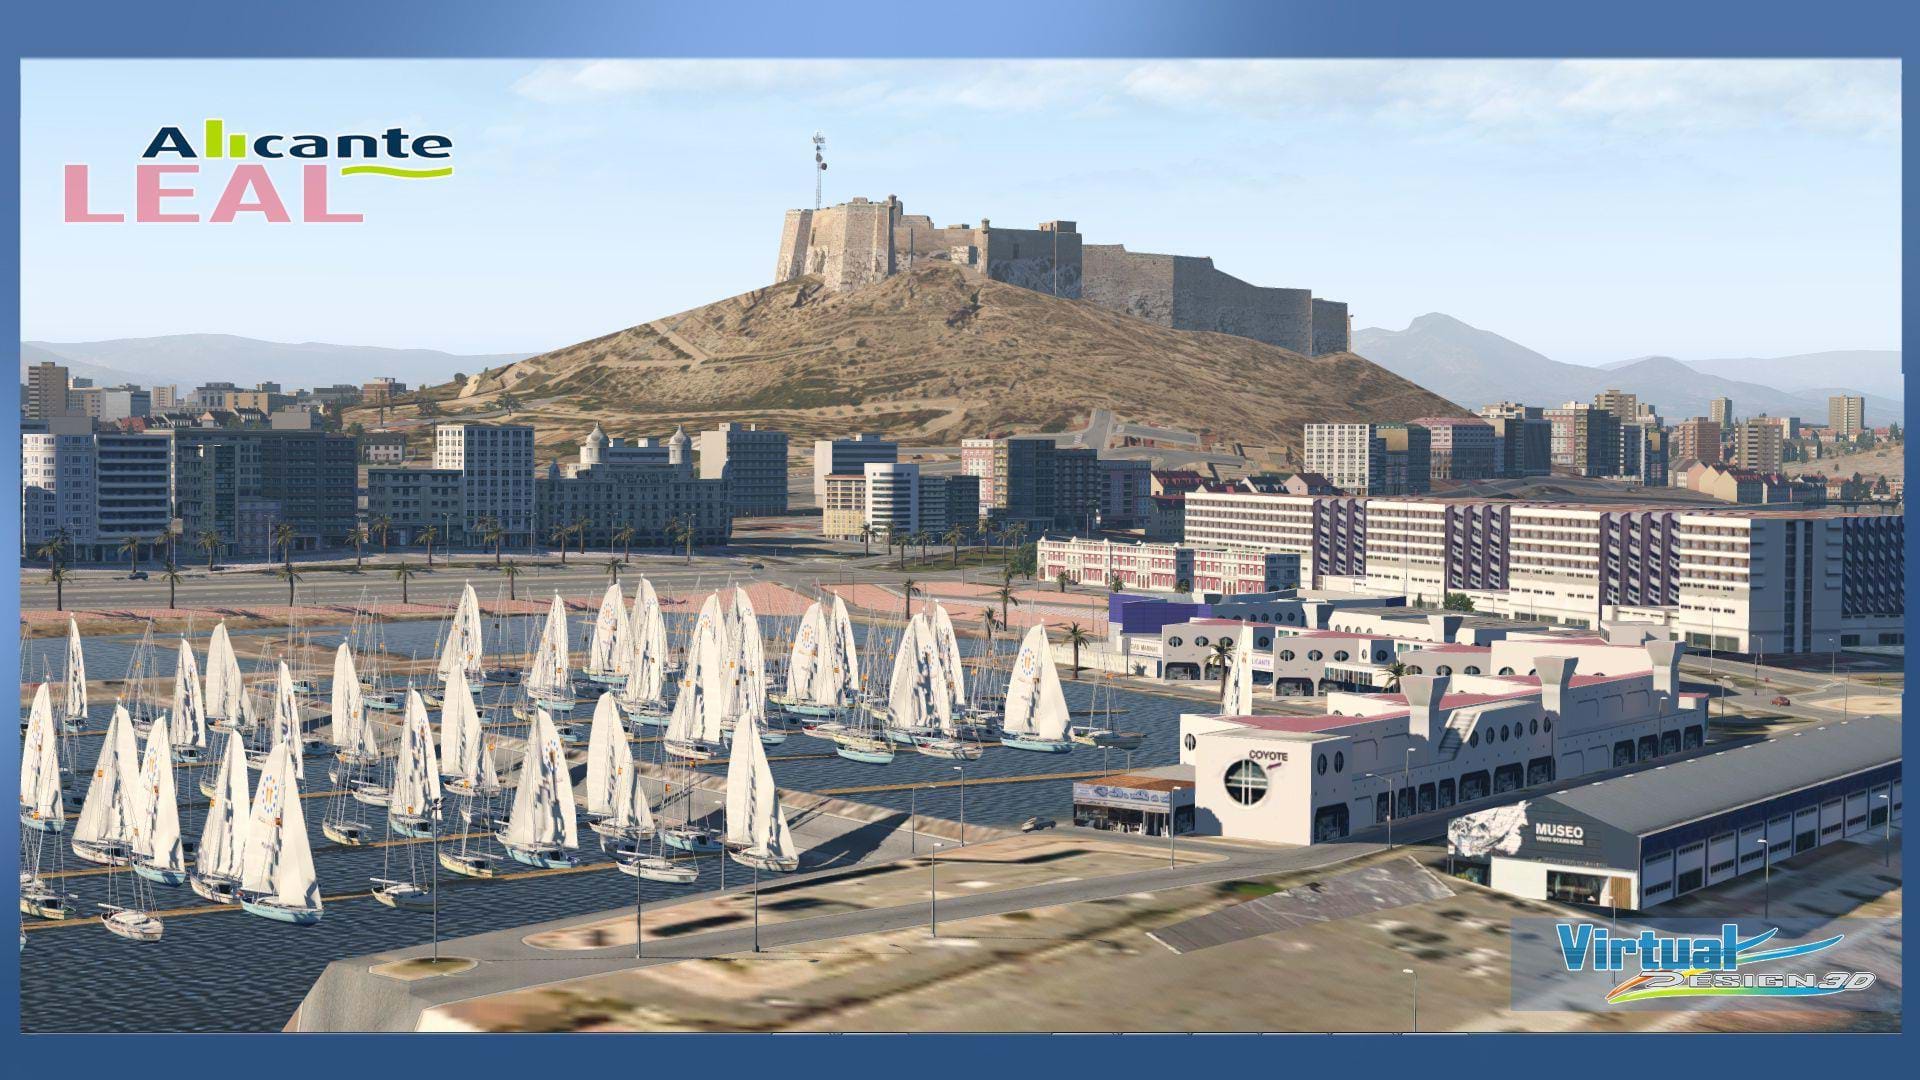 VirtualDesign3D LEAL - Alicante for X-Plane